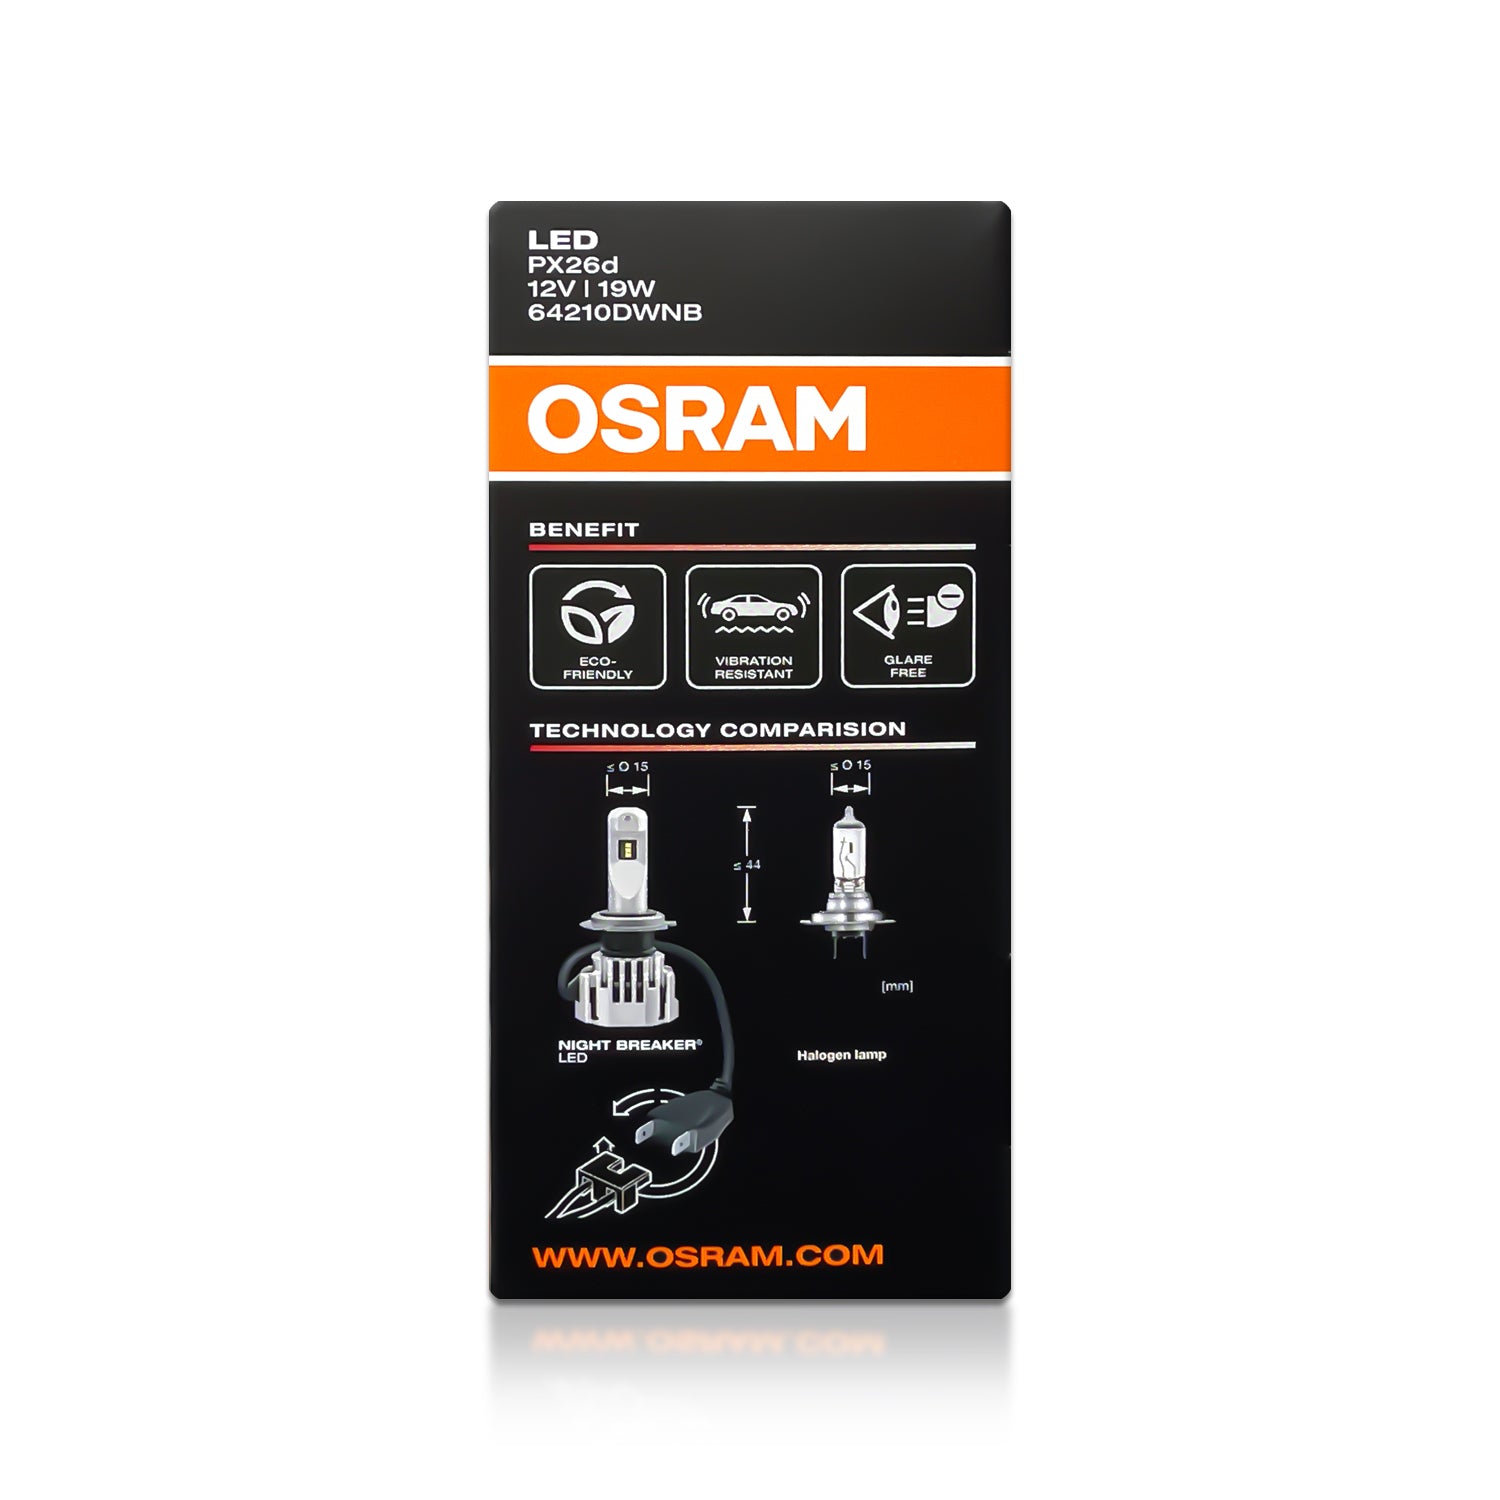 Osram Night Breaker LED H7 64210DWNB - 100% legal - up to 220% more light -  6000K - MK LED